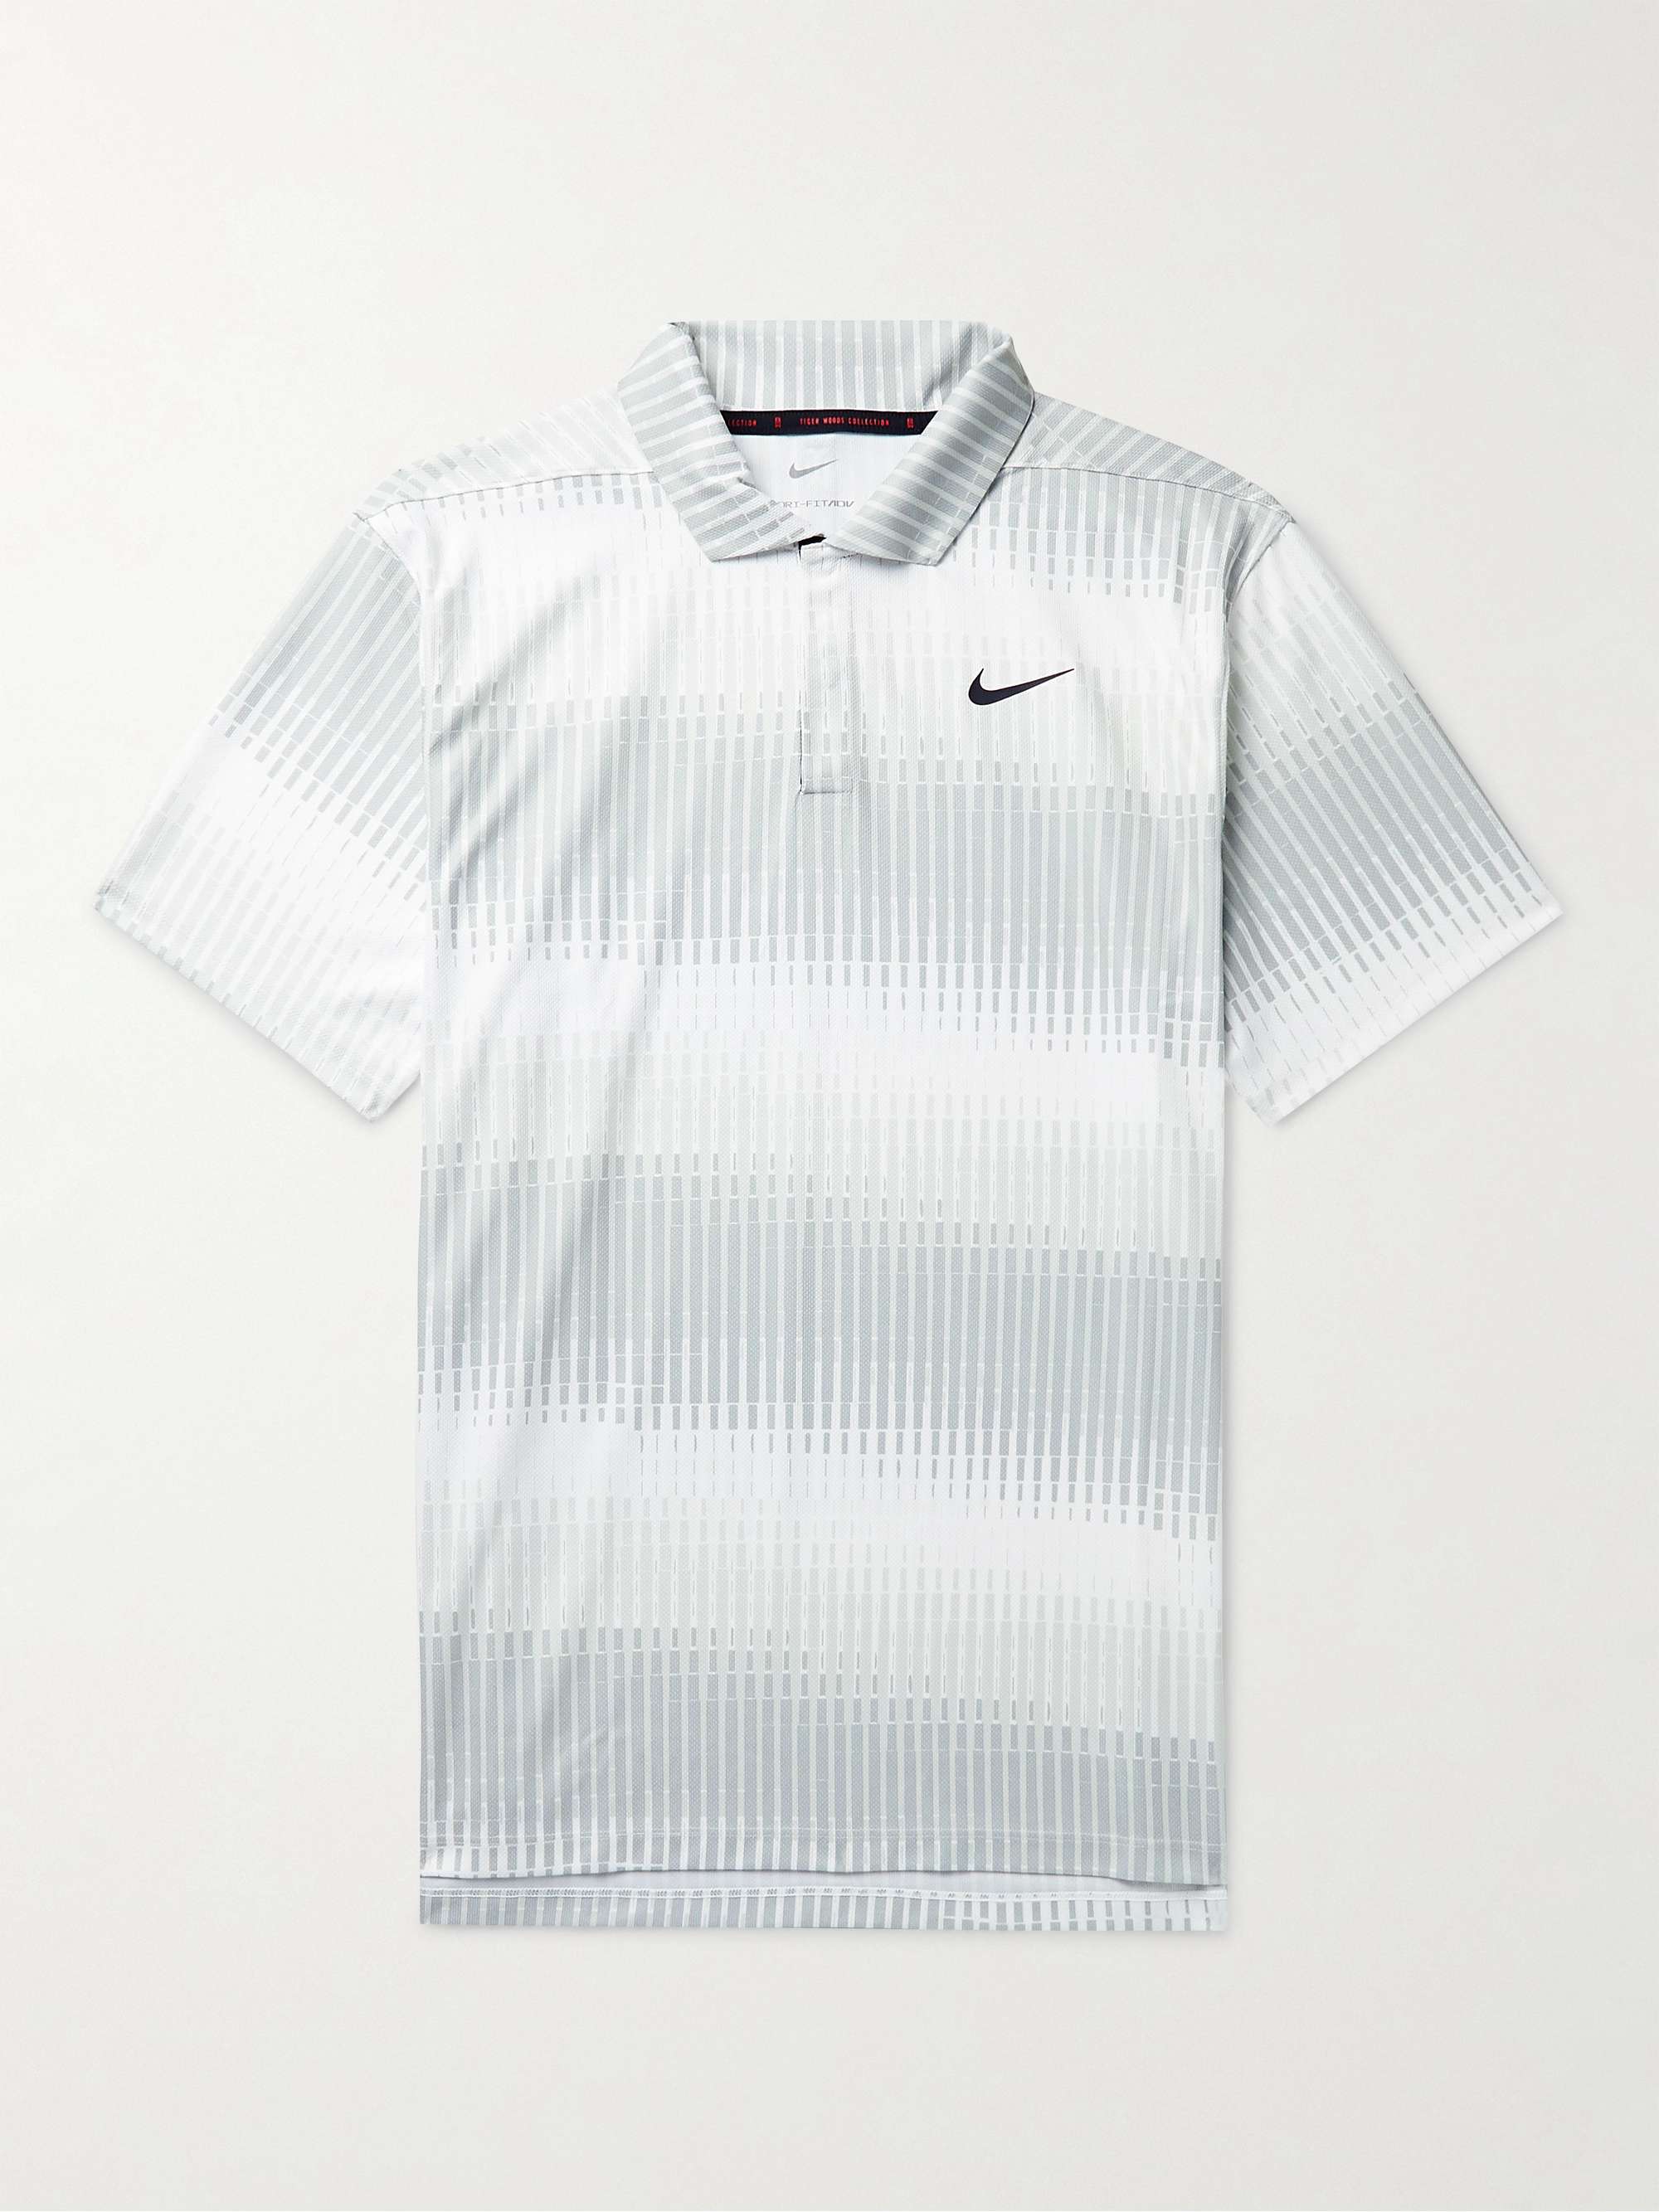 omgivet Reaktor Kartofler NIKE GOLF Tiger Woods Dri-FIT ADV Printed Golf Polo Shirt for Men | MR  PORTER